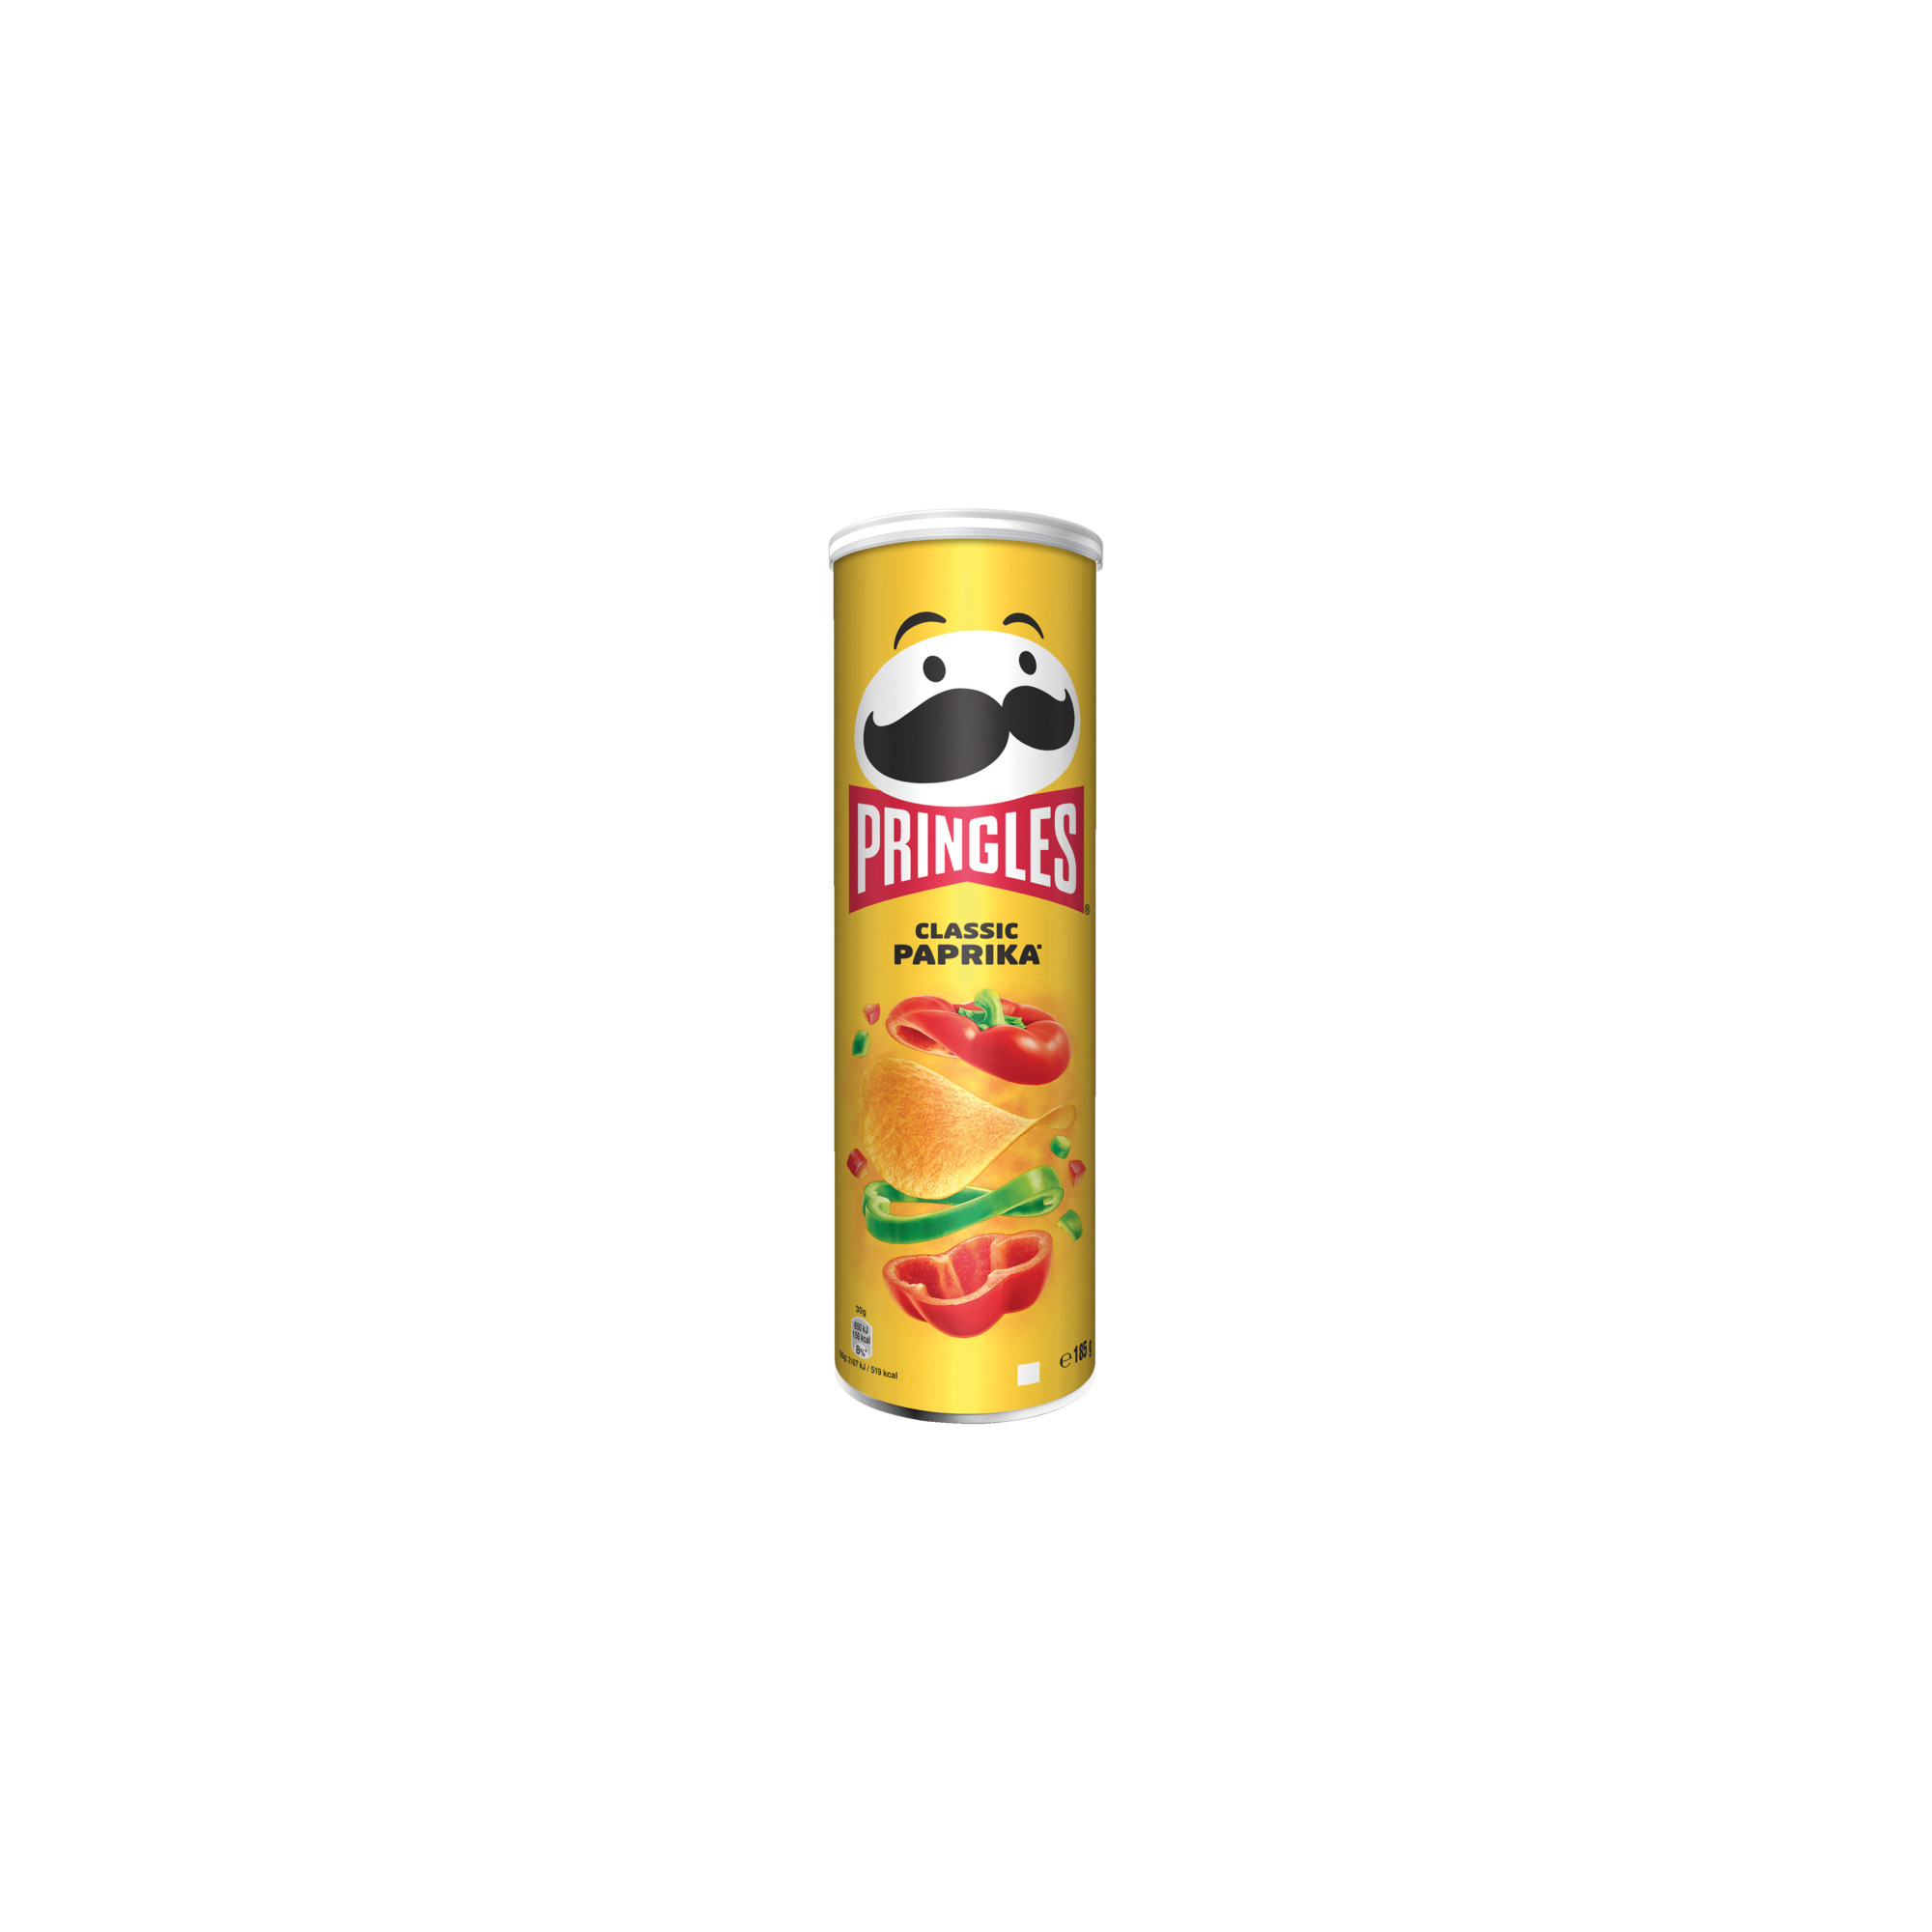 Pringles 185g, Classic Paprika